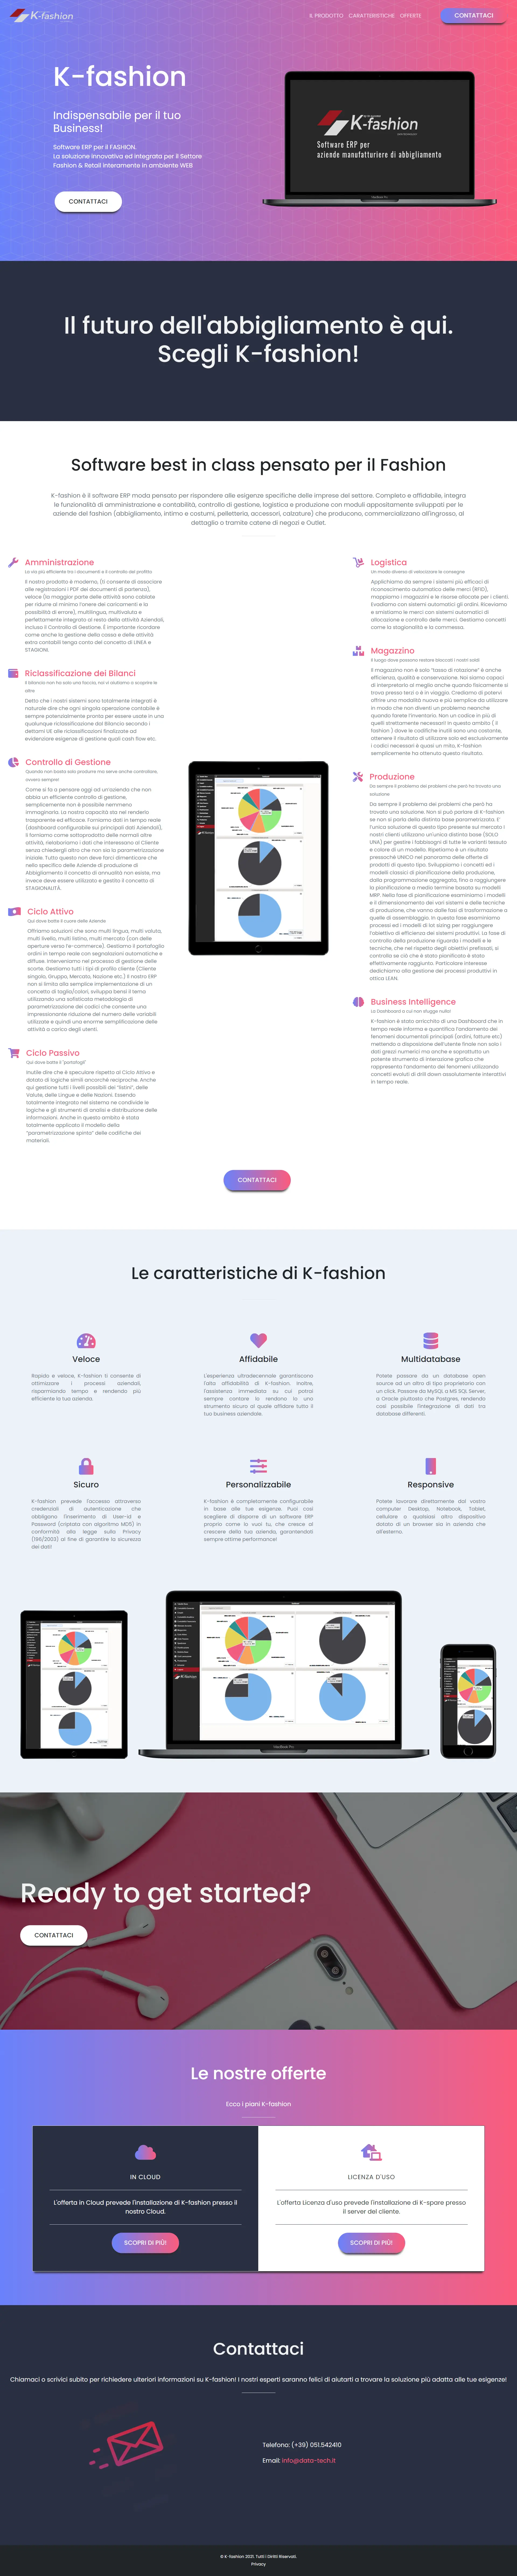 K-fashion | Landing Page